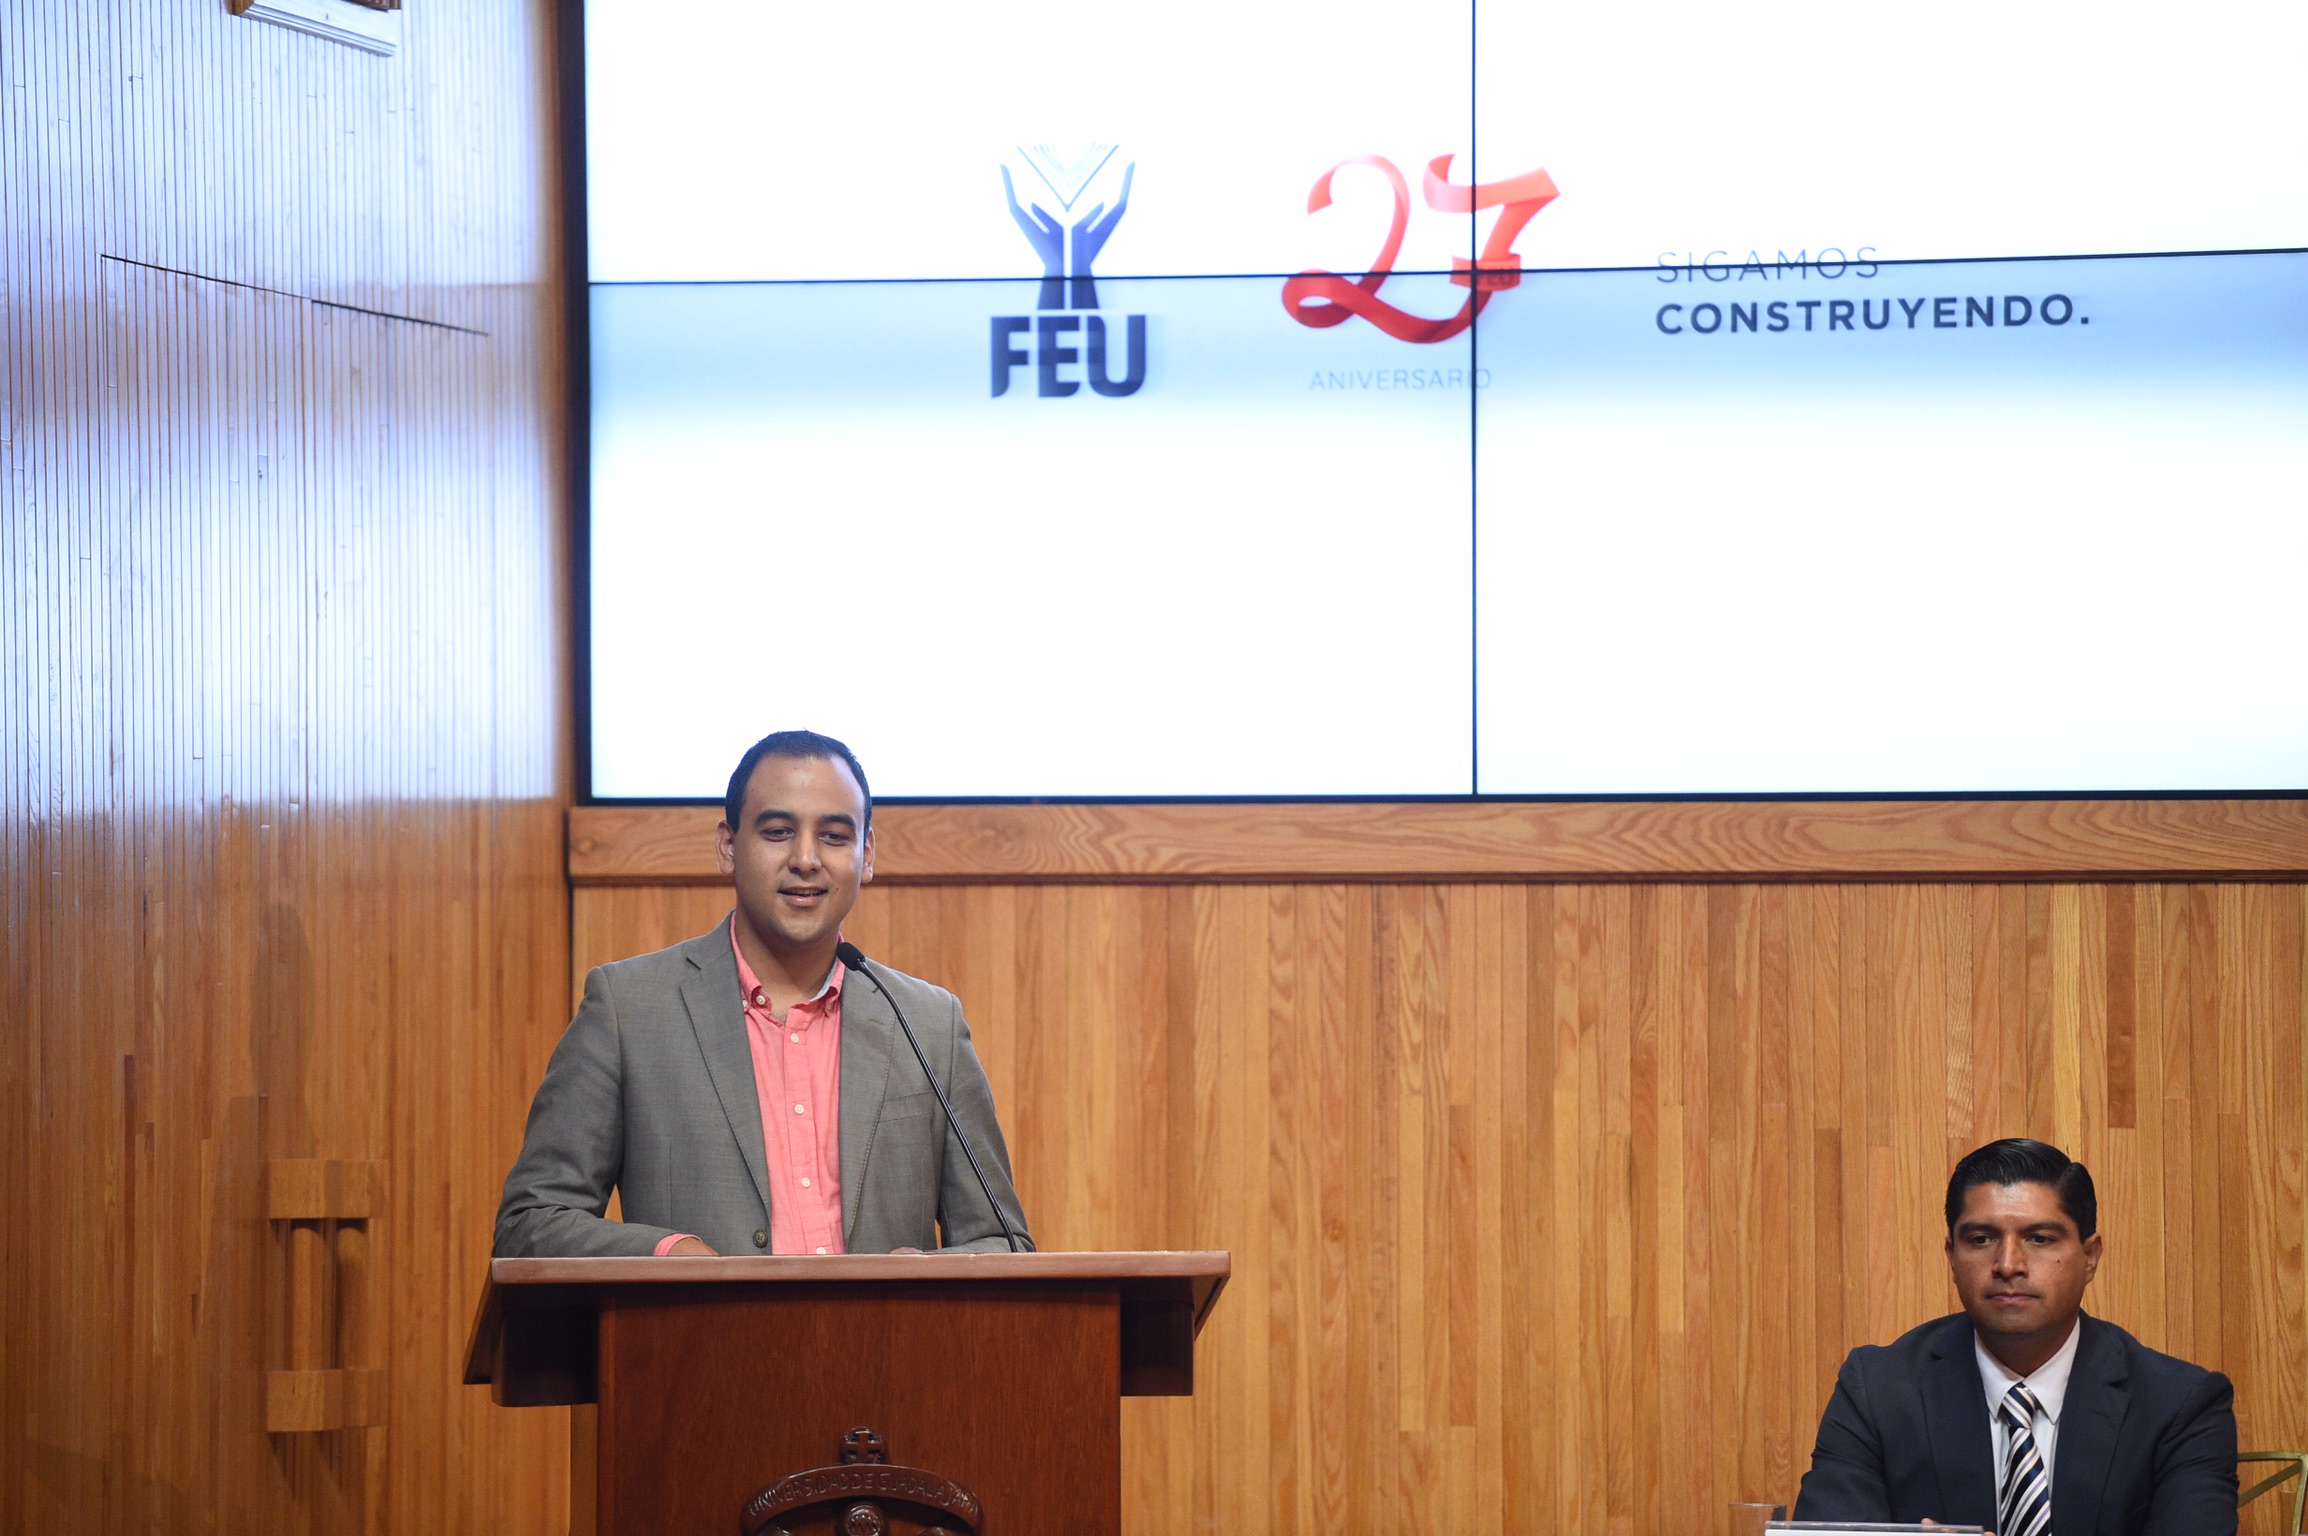 Jesús Arturo Medina Varela, Presidente de la Federación de Estudiantes Universitarios (FEU), frente al pódium haciendo uso de la voz.